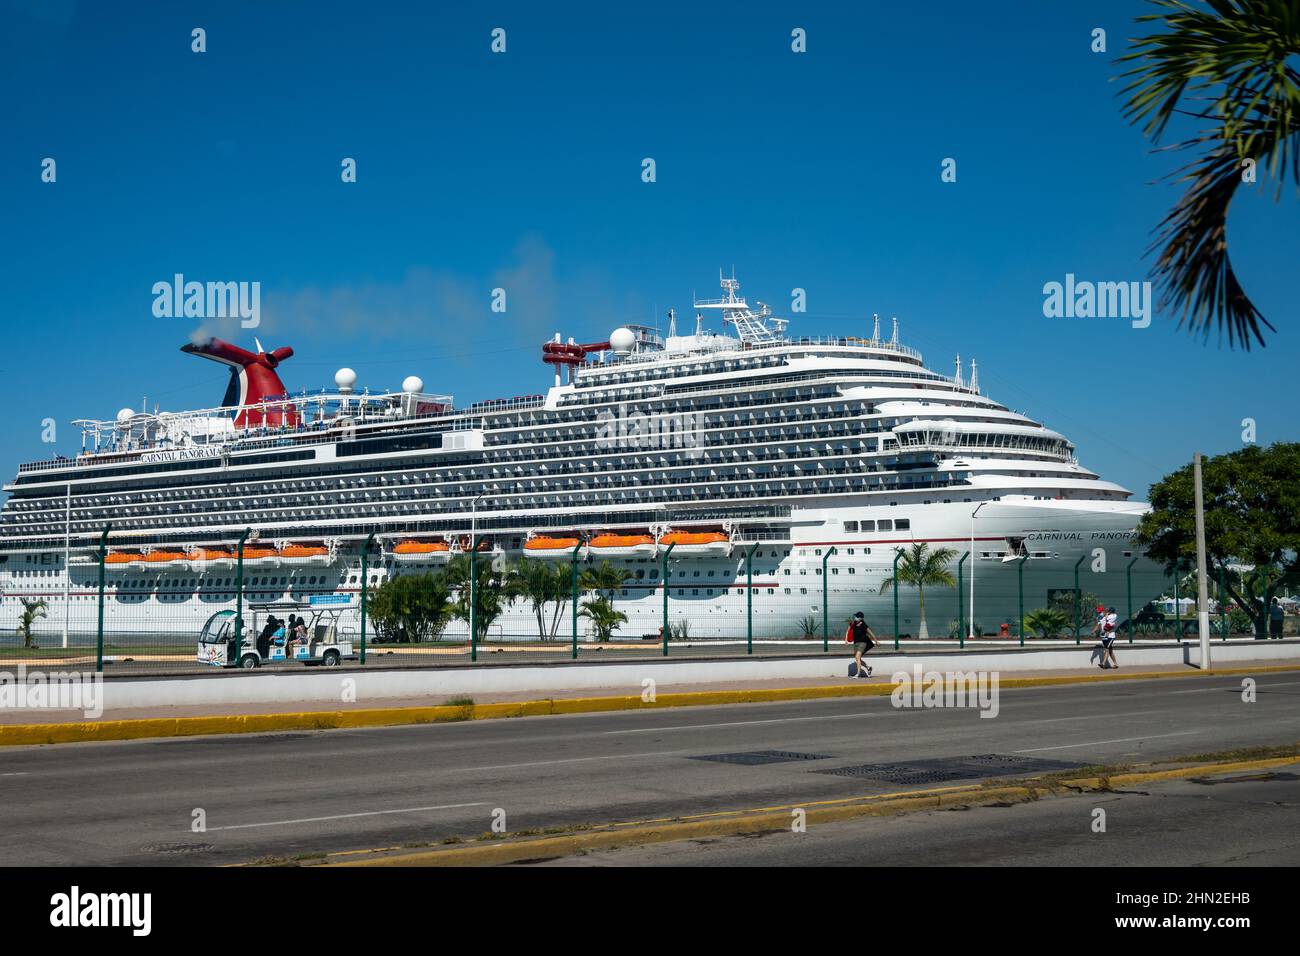 A cruise ship docked at the port. Puerto Vallarta, Jalisco, Mexico. Stock Photo